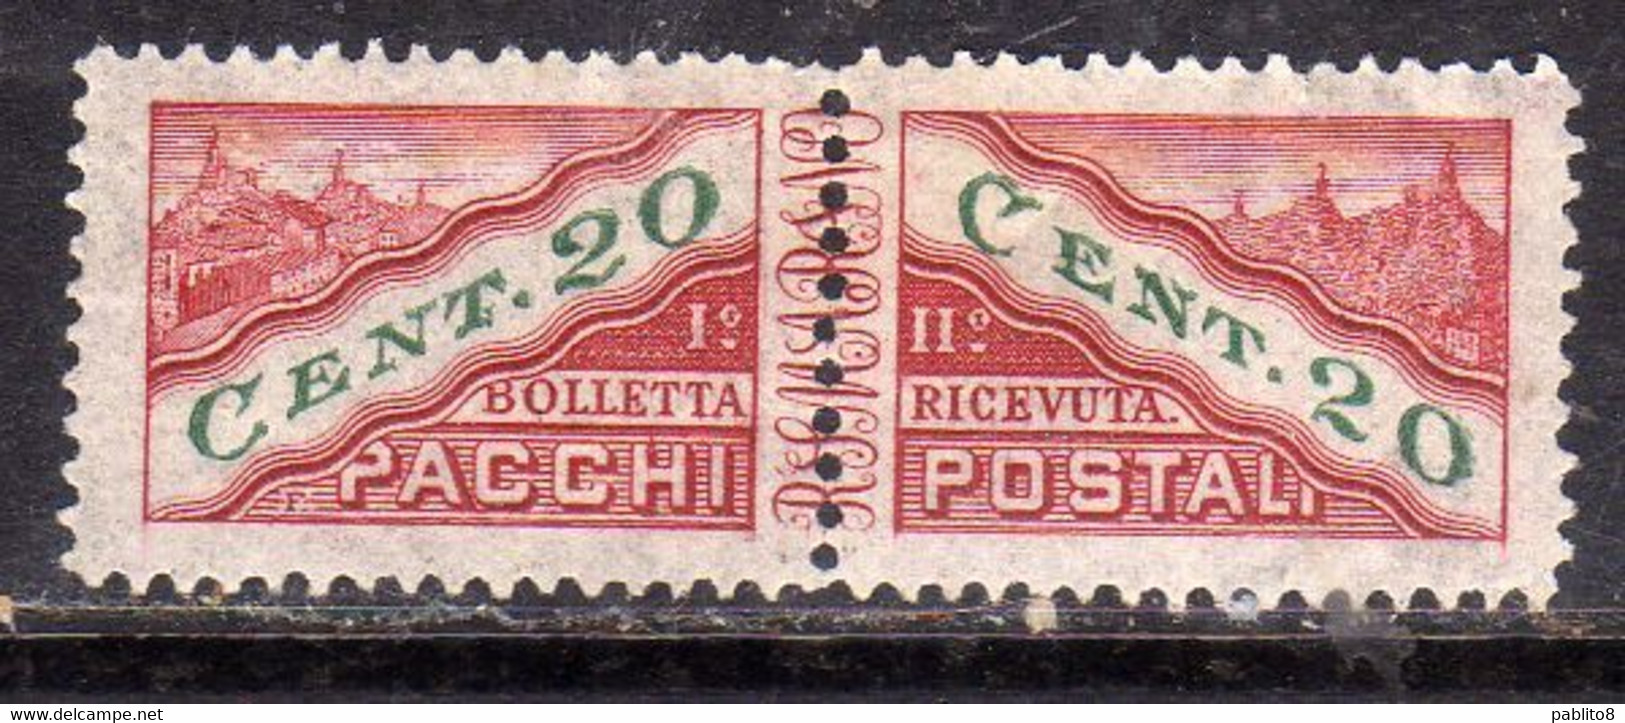 REPUBBLICA DI SAN MARINO 1945 PACCHI POSTALI PARCEL POST CENT. 20c MNH - Paketmarken